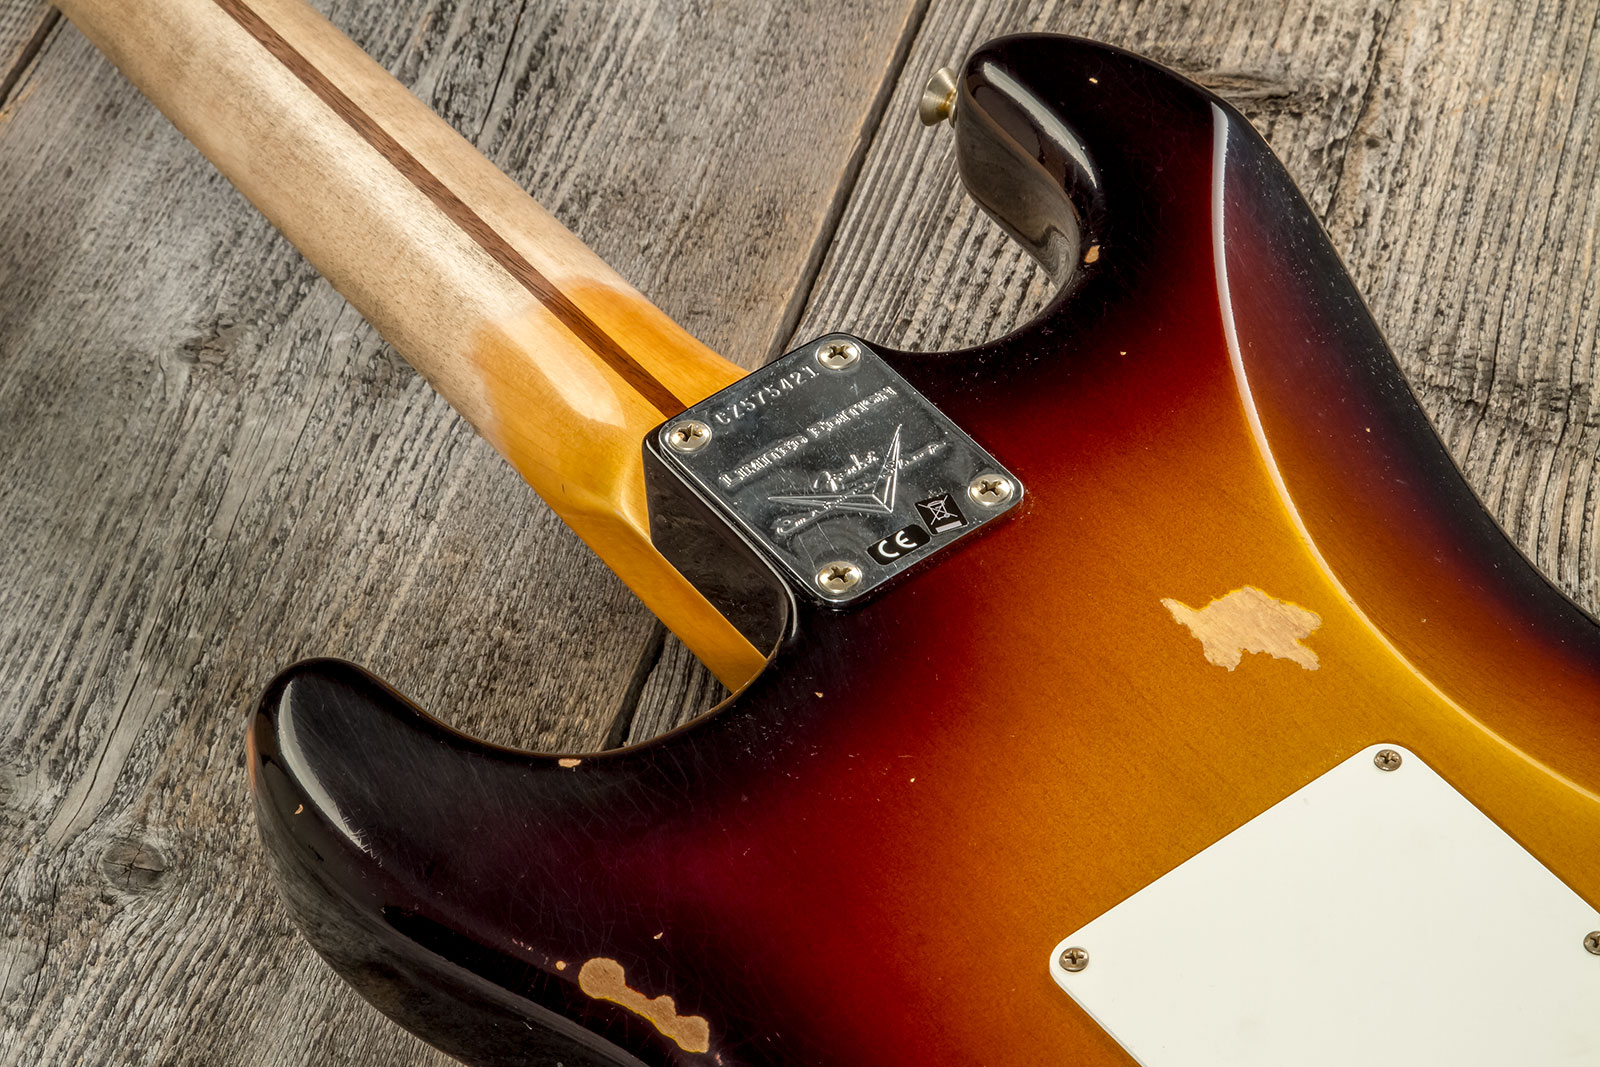 Fender Custom Shop Strat 1957 3s Trem Mn #cz575421 - Relic 2-color Sunburst - Str shape electric guitar - Variation 6